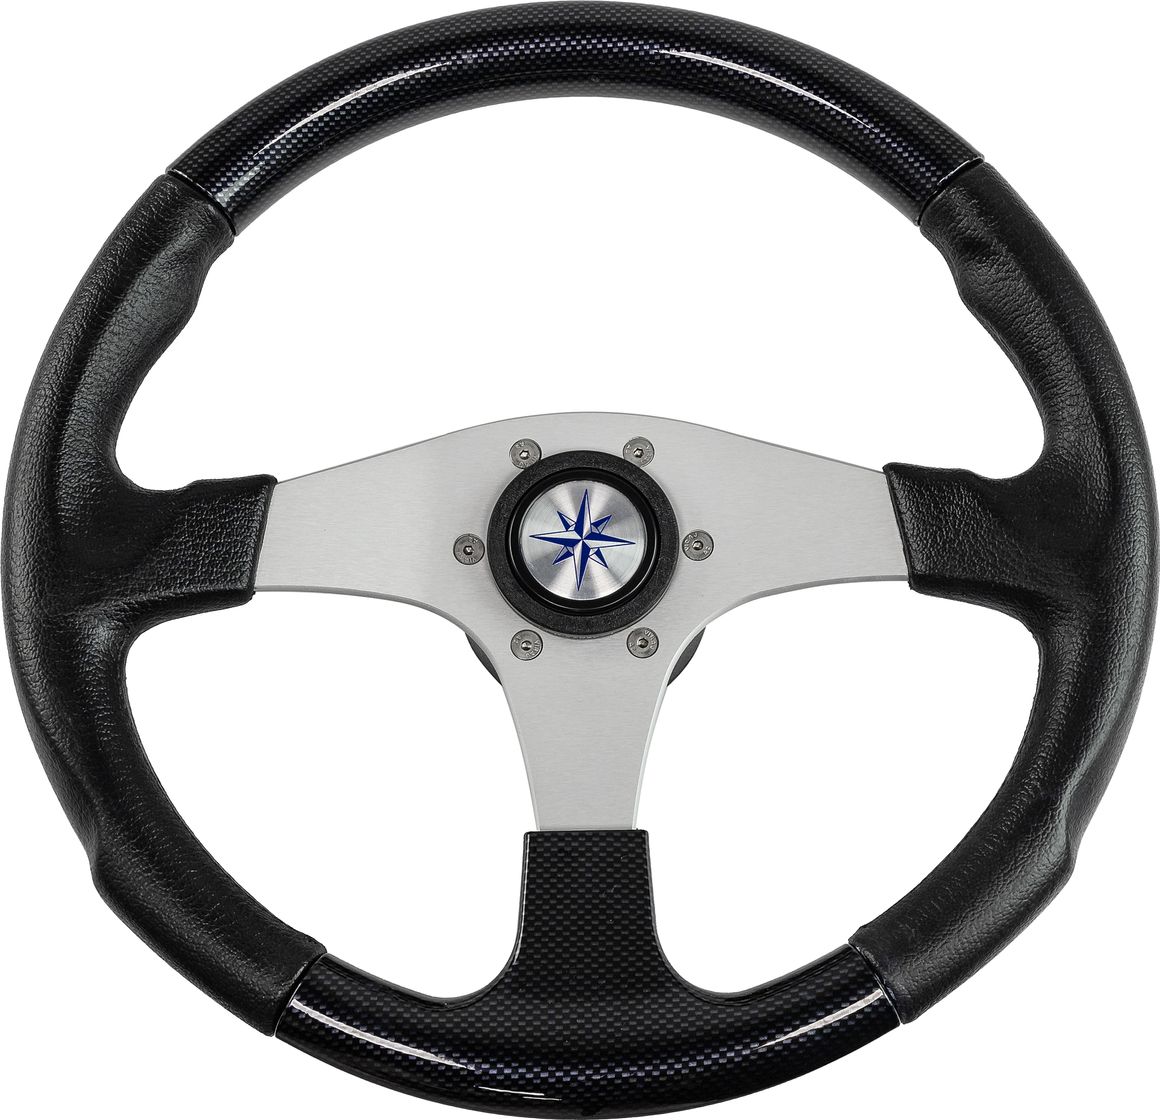 Рулевое колесо EVO MARINE 2 обод черный, спицы серебряные д. 355 мм VN850001-35 рулевое колесо elba sport обод спицы серебряные д 320 мм vn13321 01